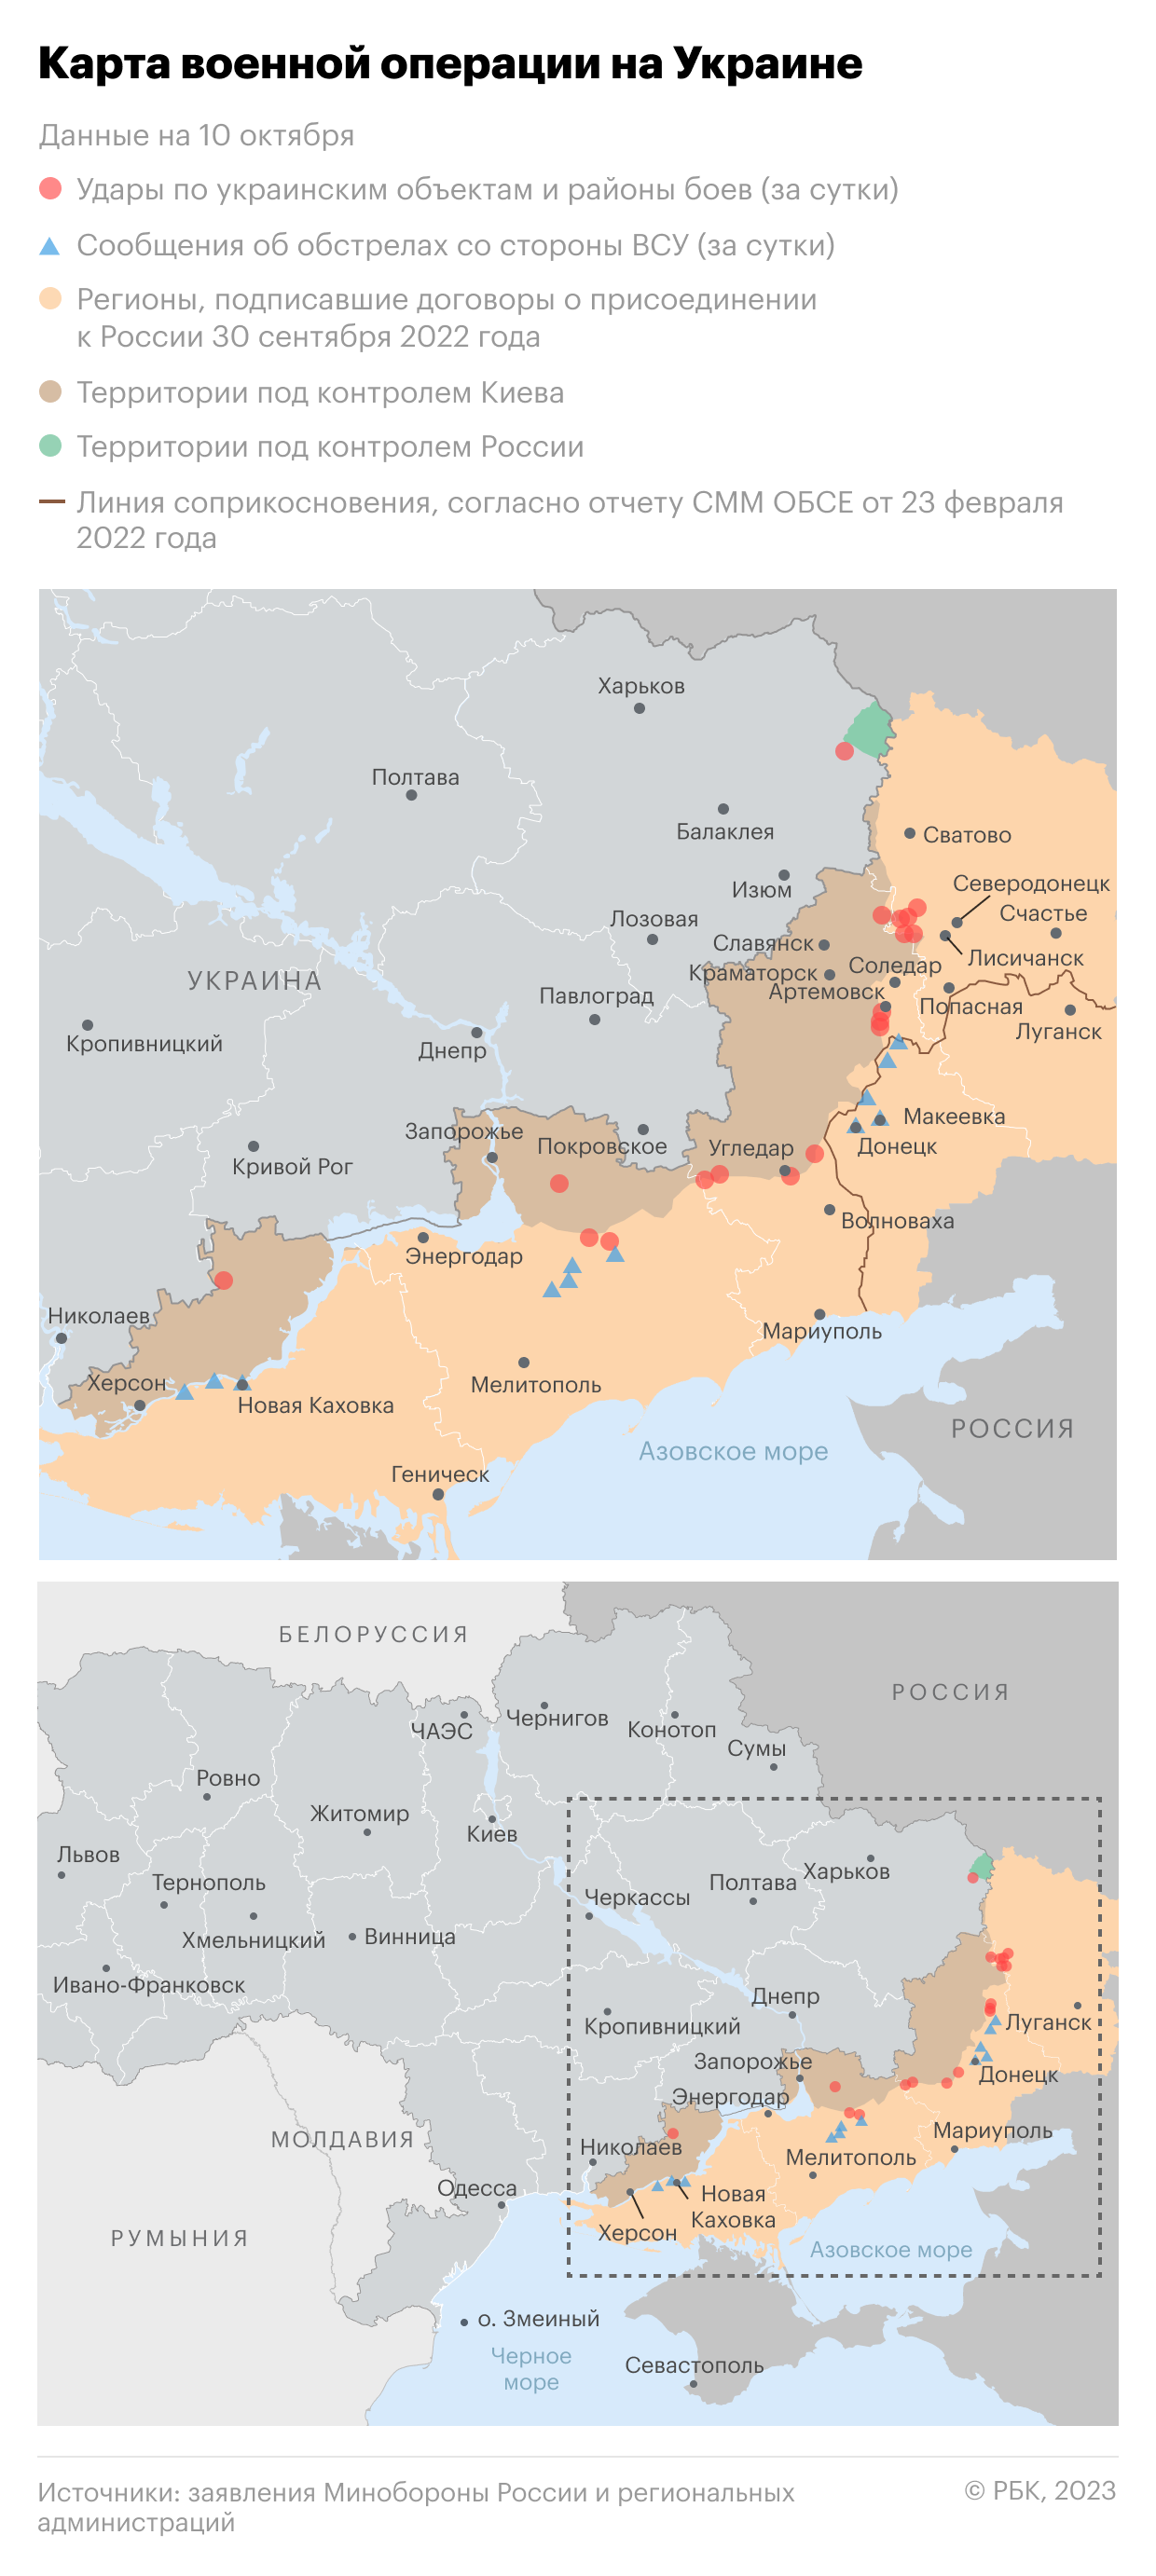 Военная операция на Украине. Карта на 10 октября